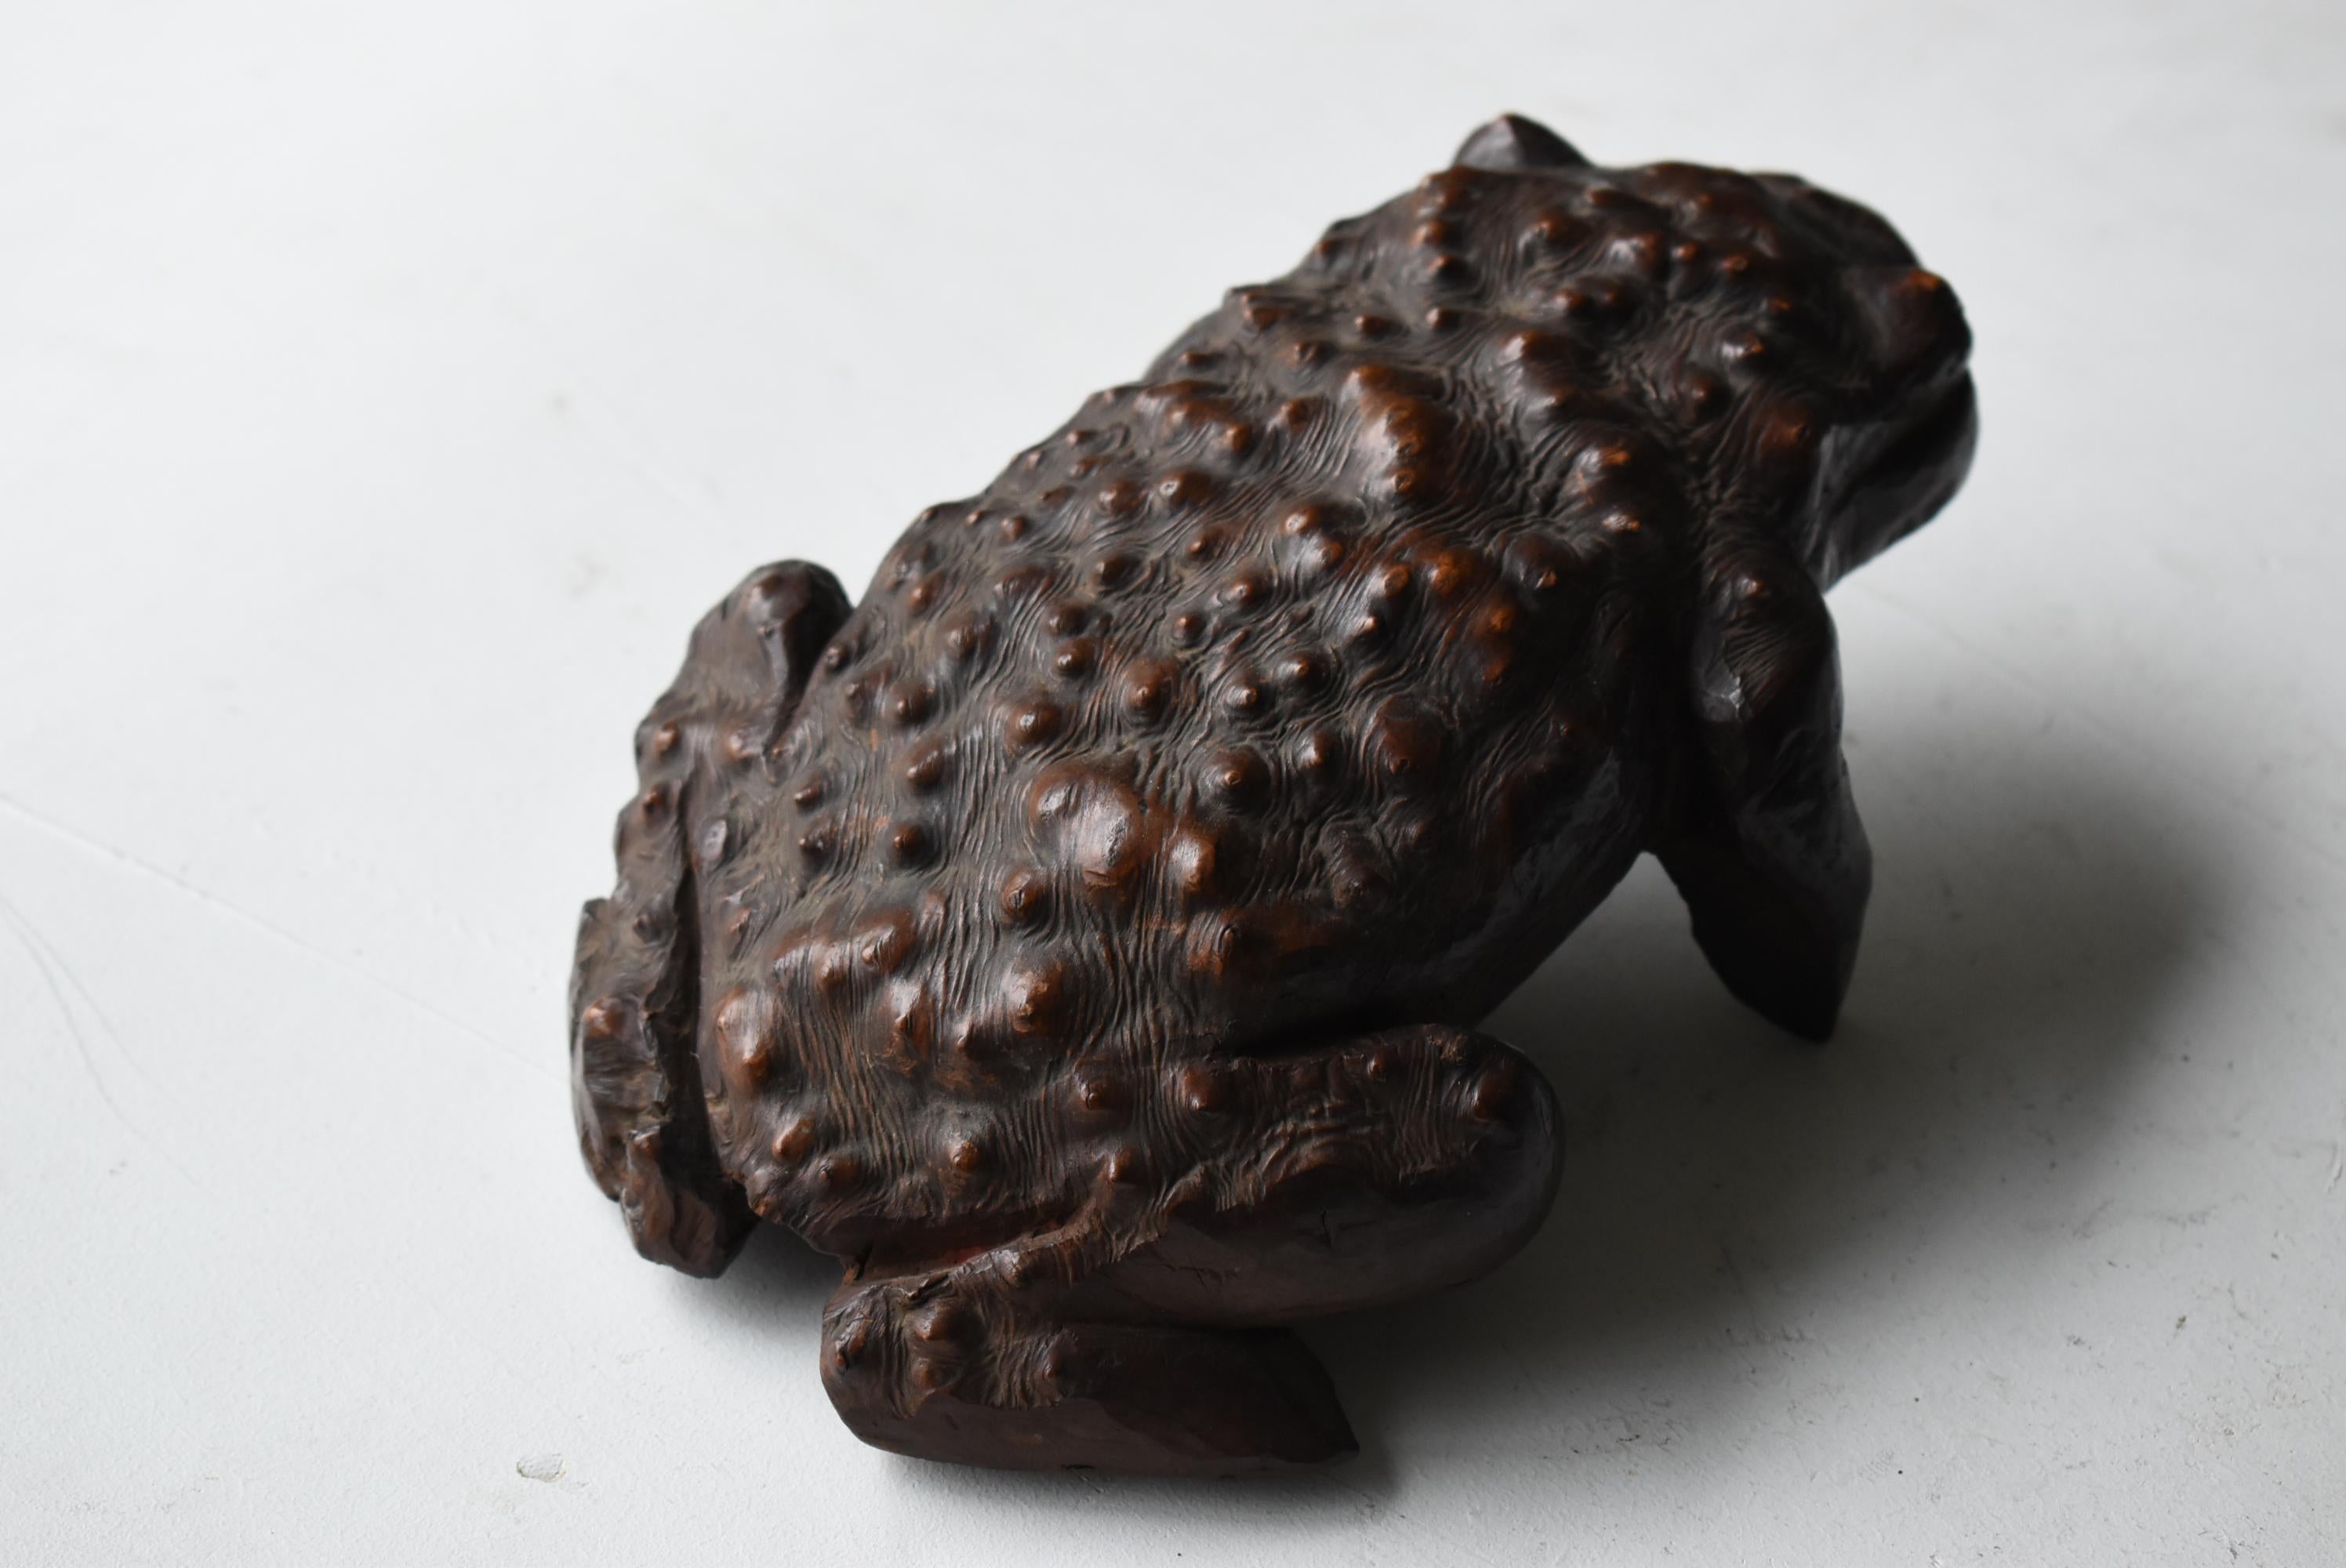 Japanese Antique Wood Carving Frog 1900s-1940s / Sculpture Wabi Sabi  For Sale 7